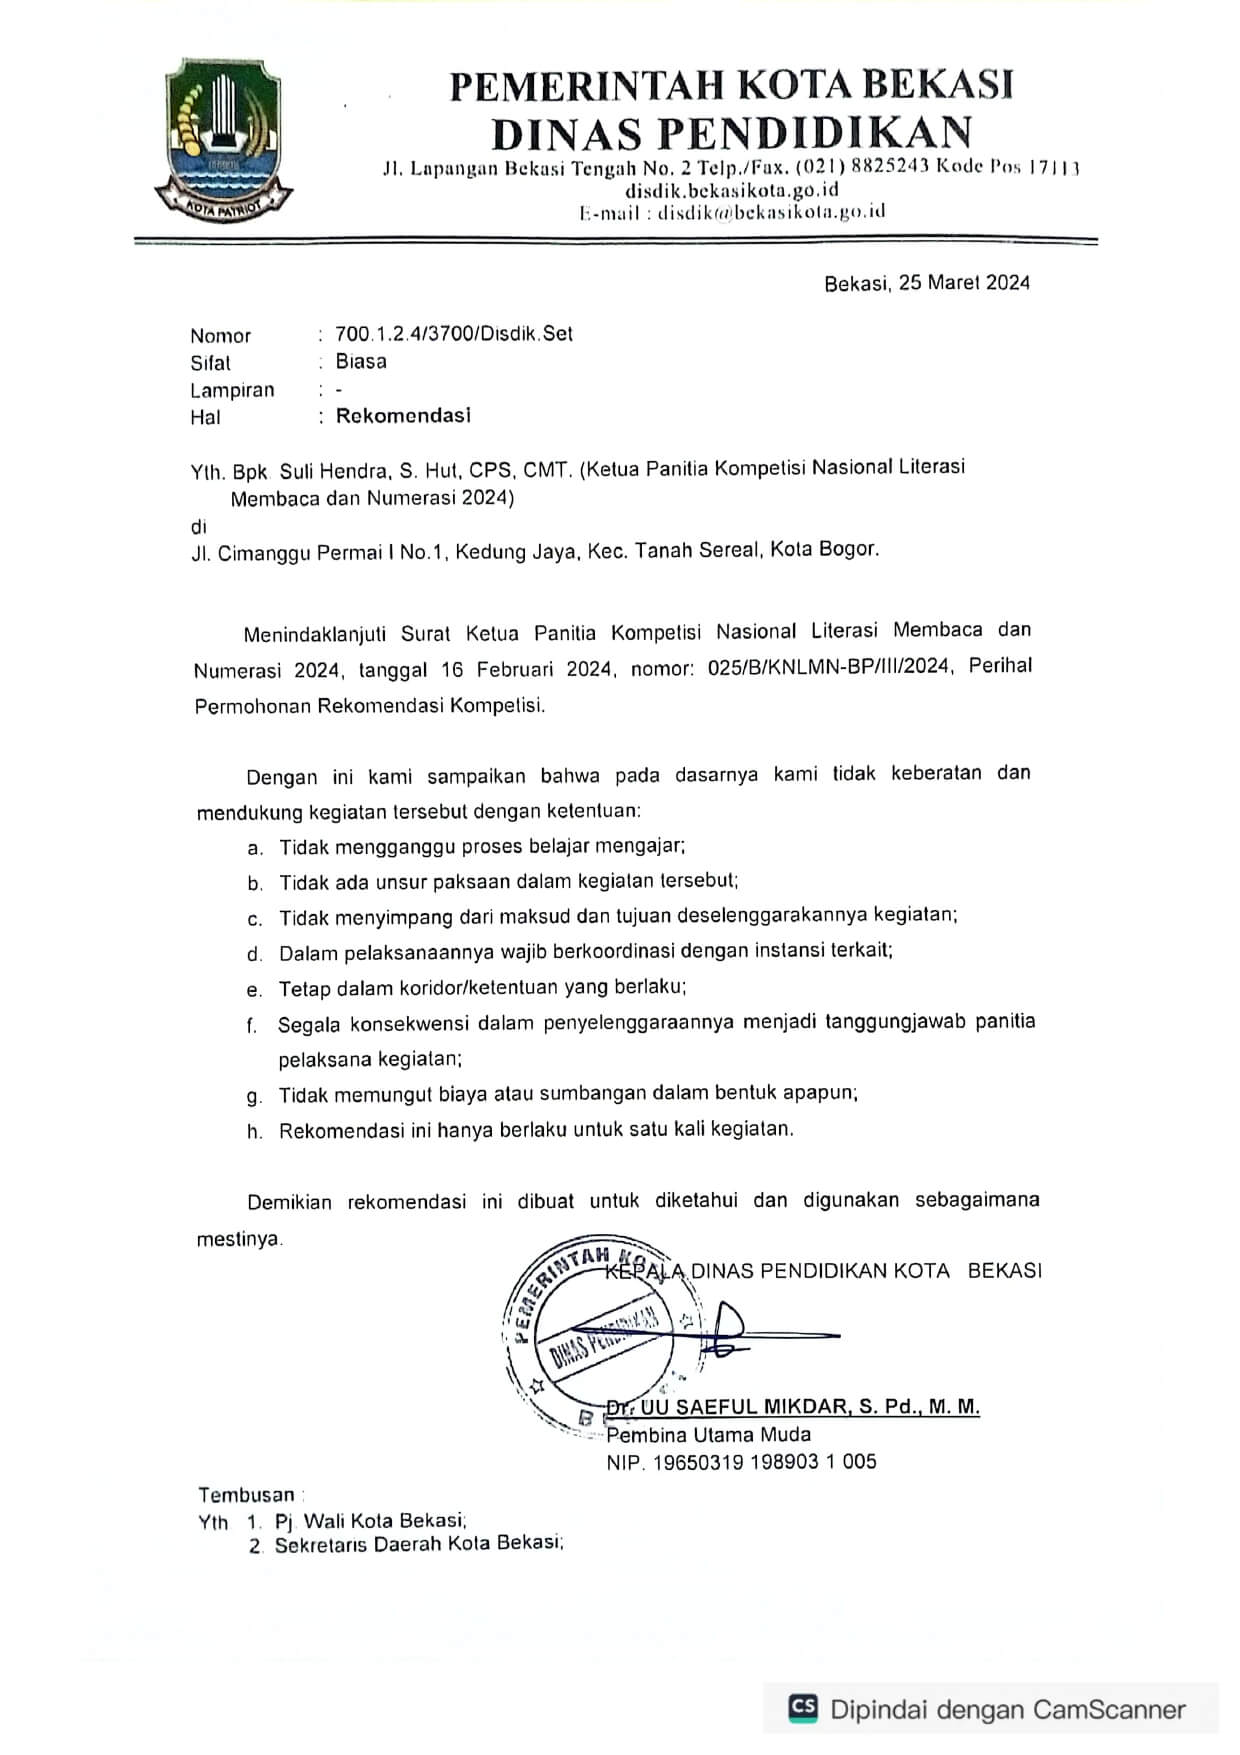 Dinas Pendidikan Kota Bekasi - Rekomendasi KNLMN 2024